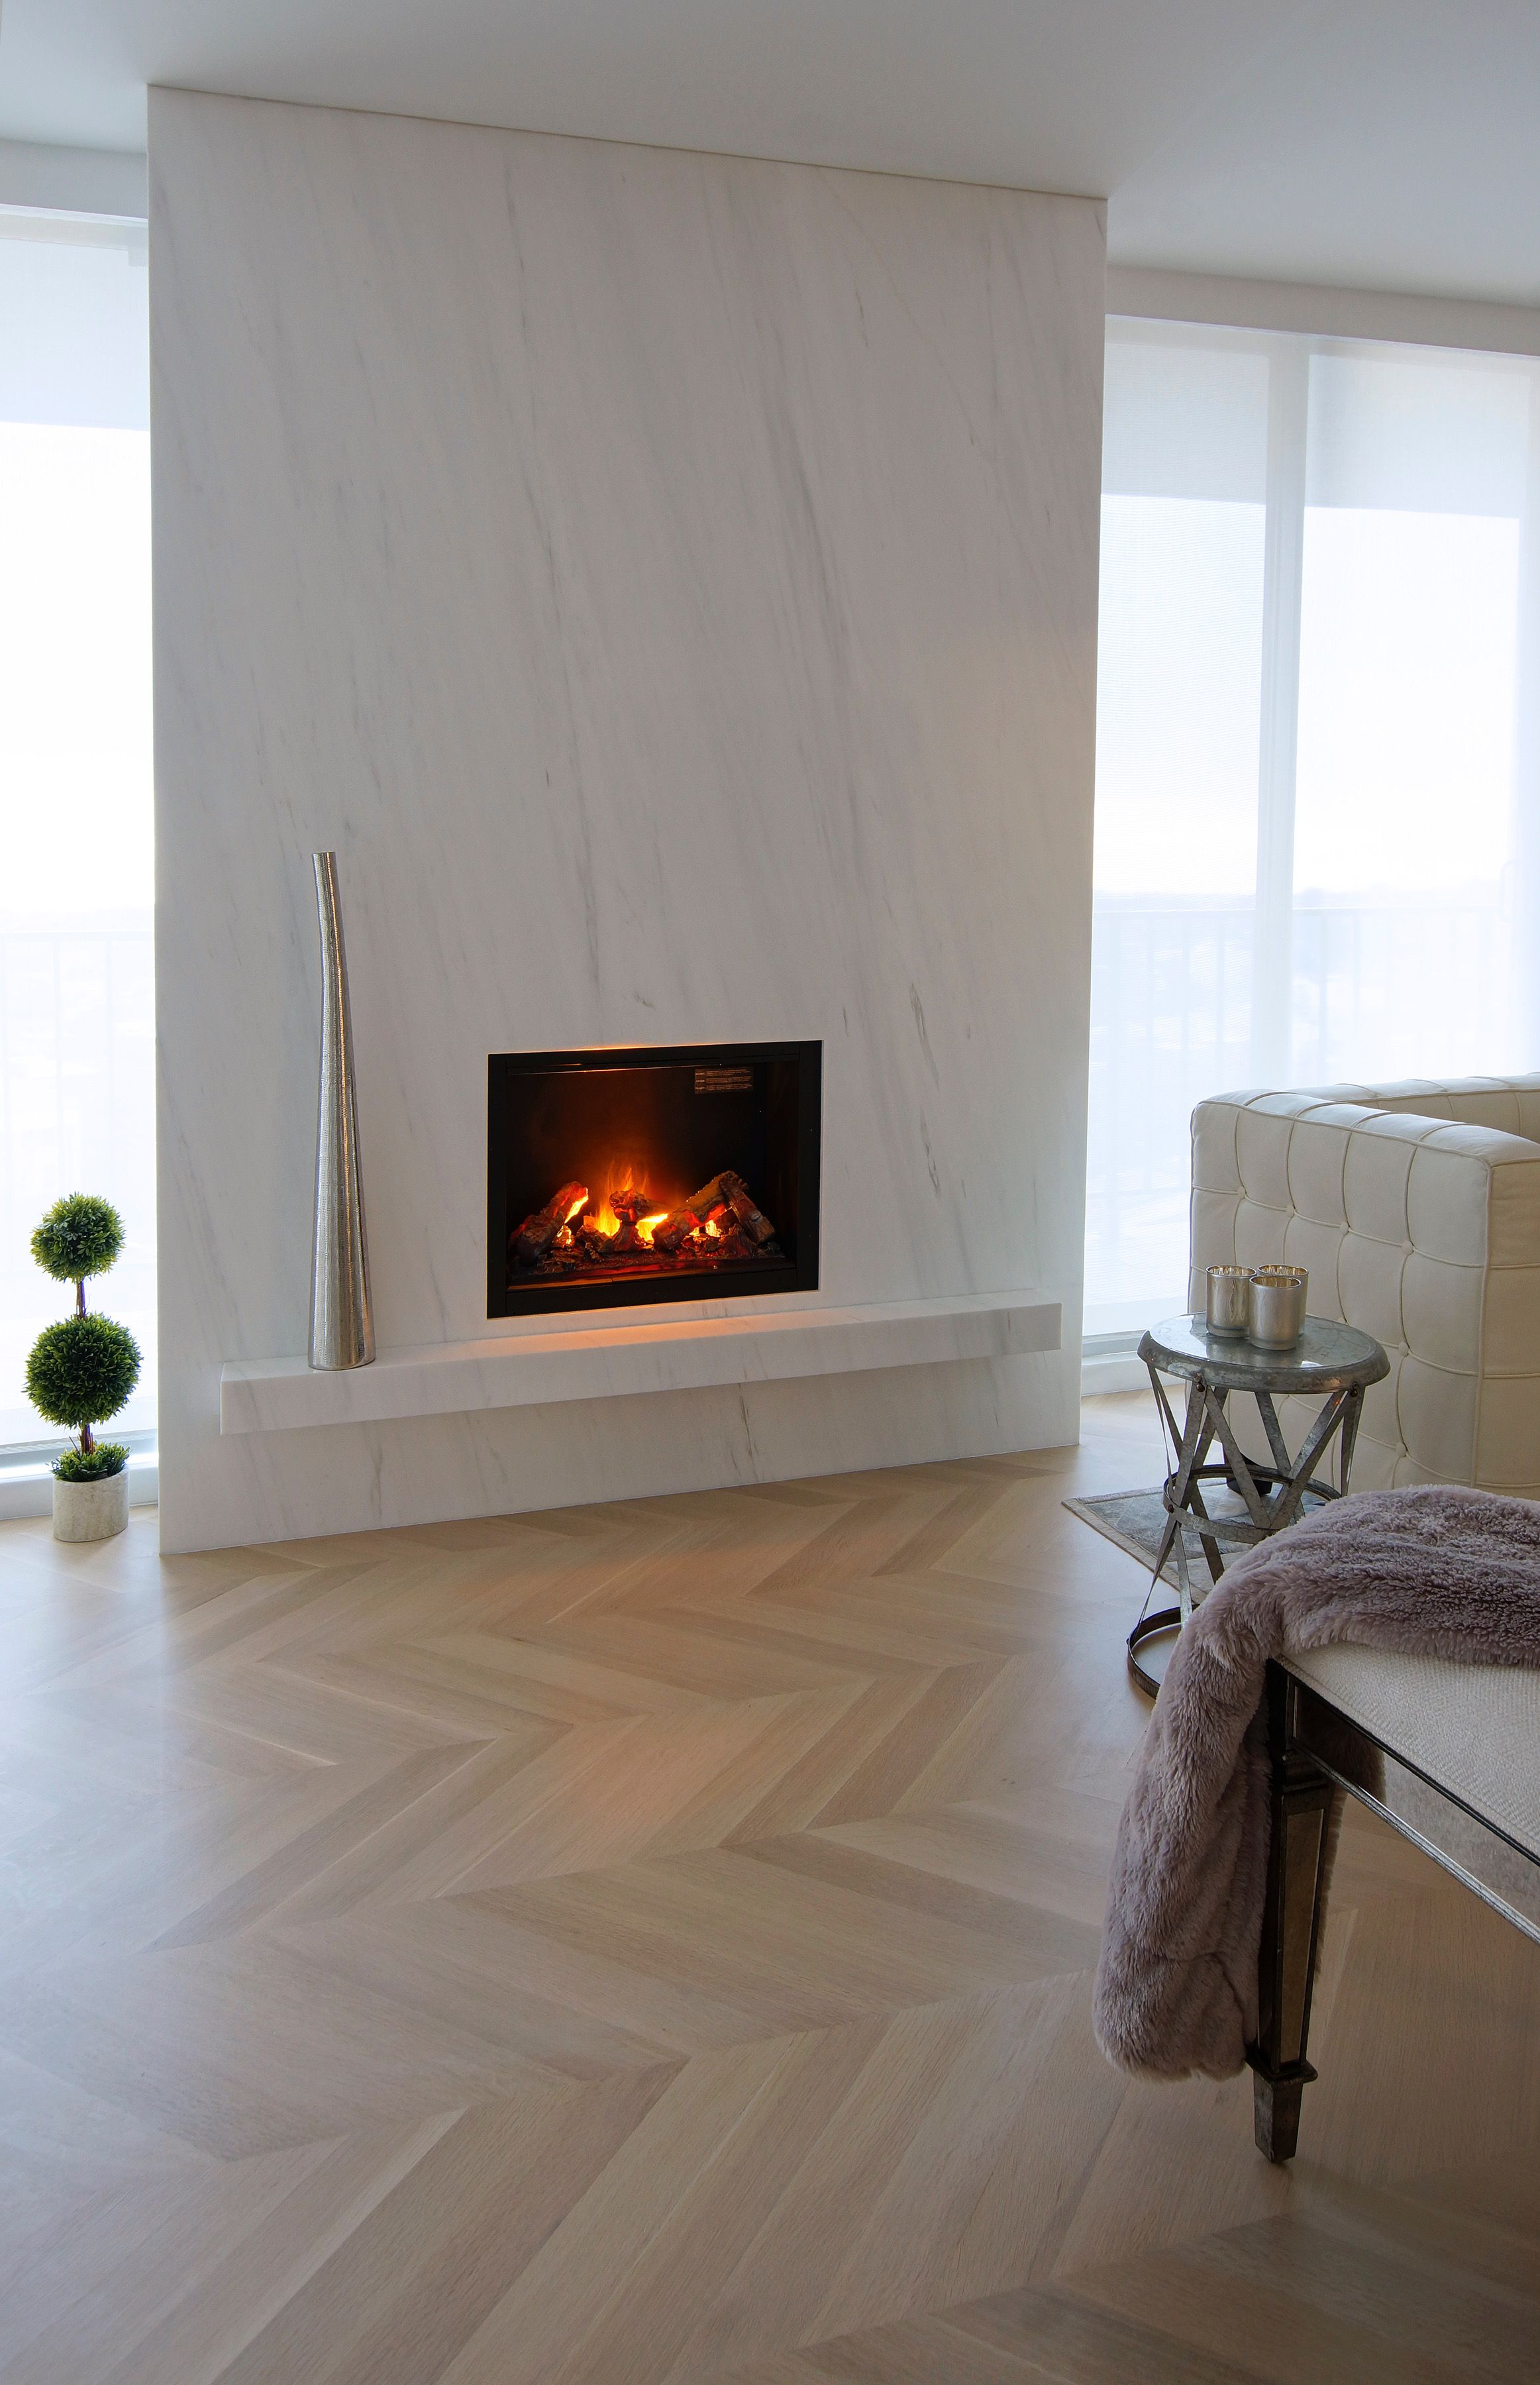 Pinterest Fireplace Inspirational Modern Fireplace Design Peg Vlachos